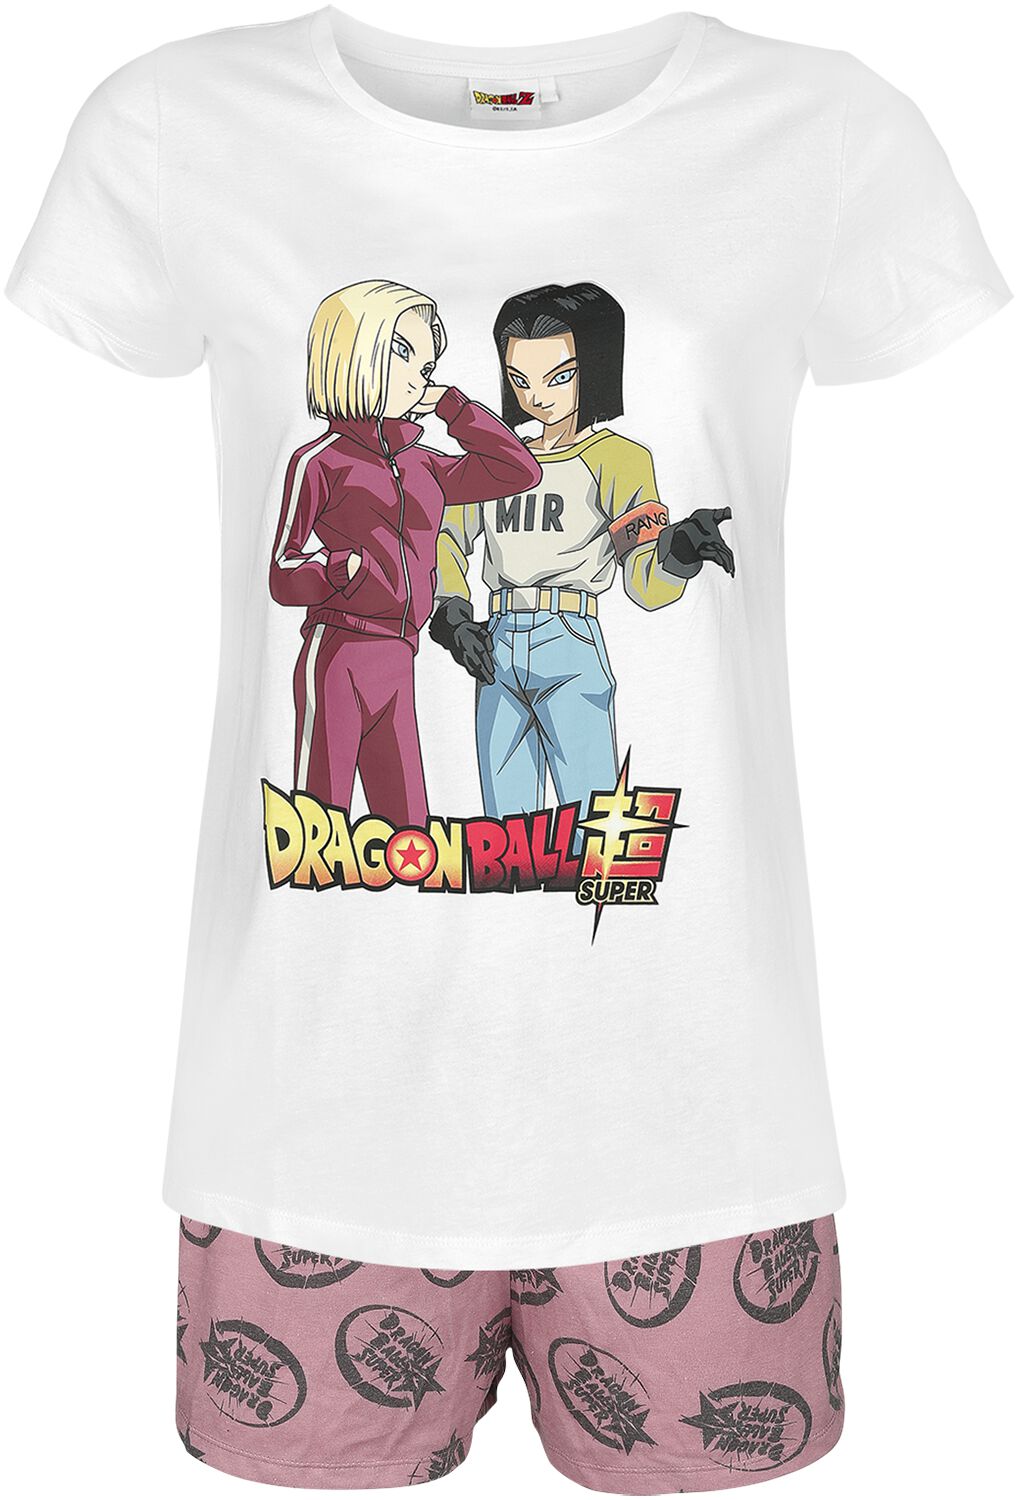 Dragon Ball - Gaming Schlafanzug - Super - Androids - S bis 3XL - für Damen - Größe XL - weiß/rosa  - EMP exklusives Merchandise!